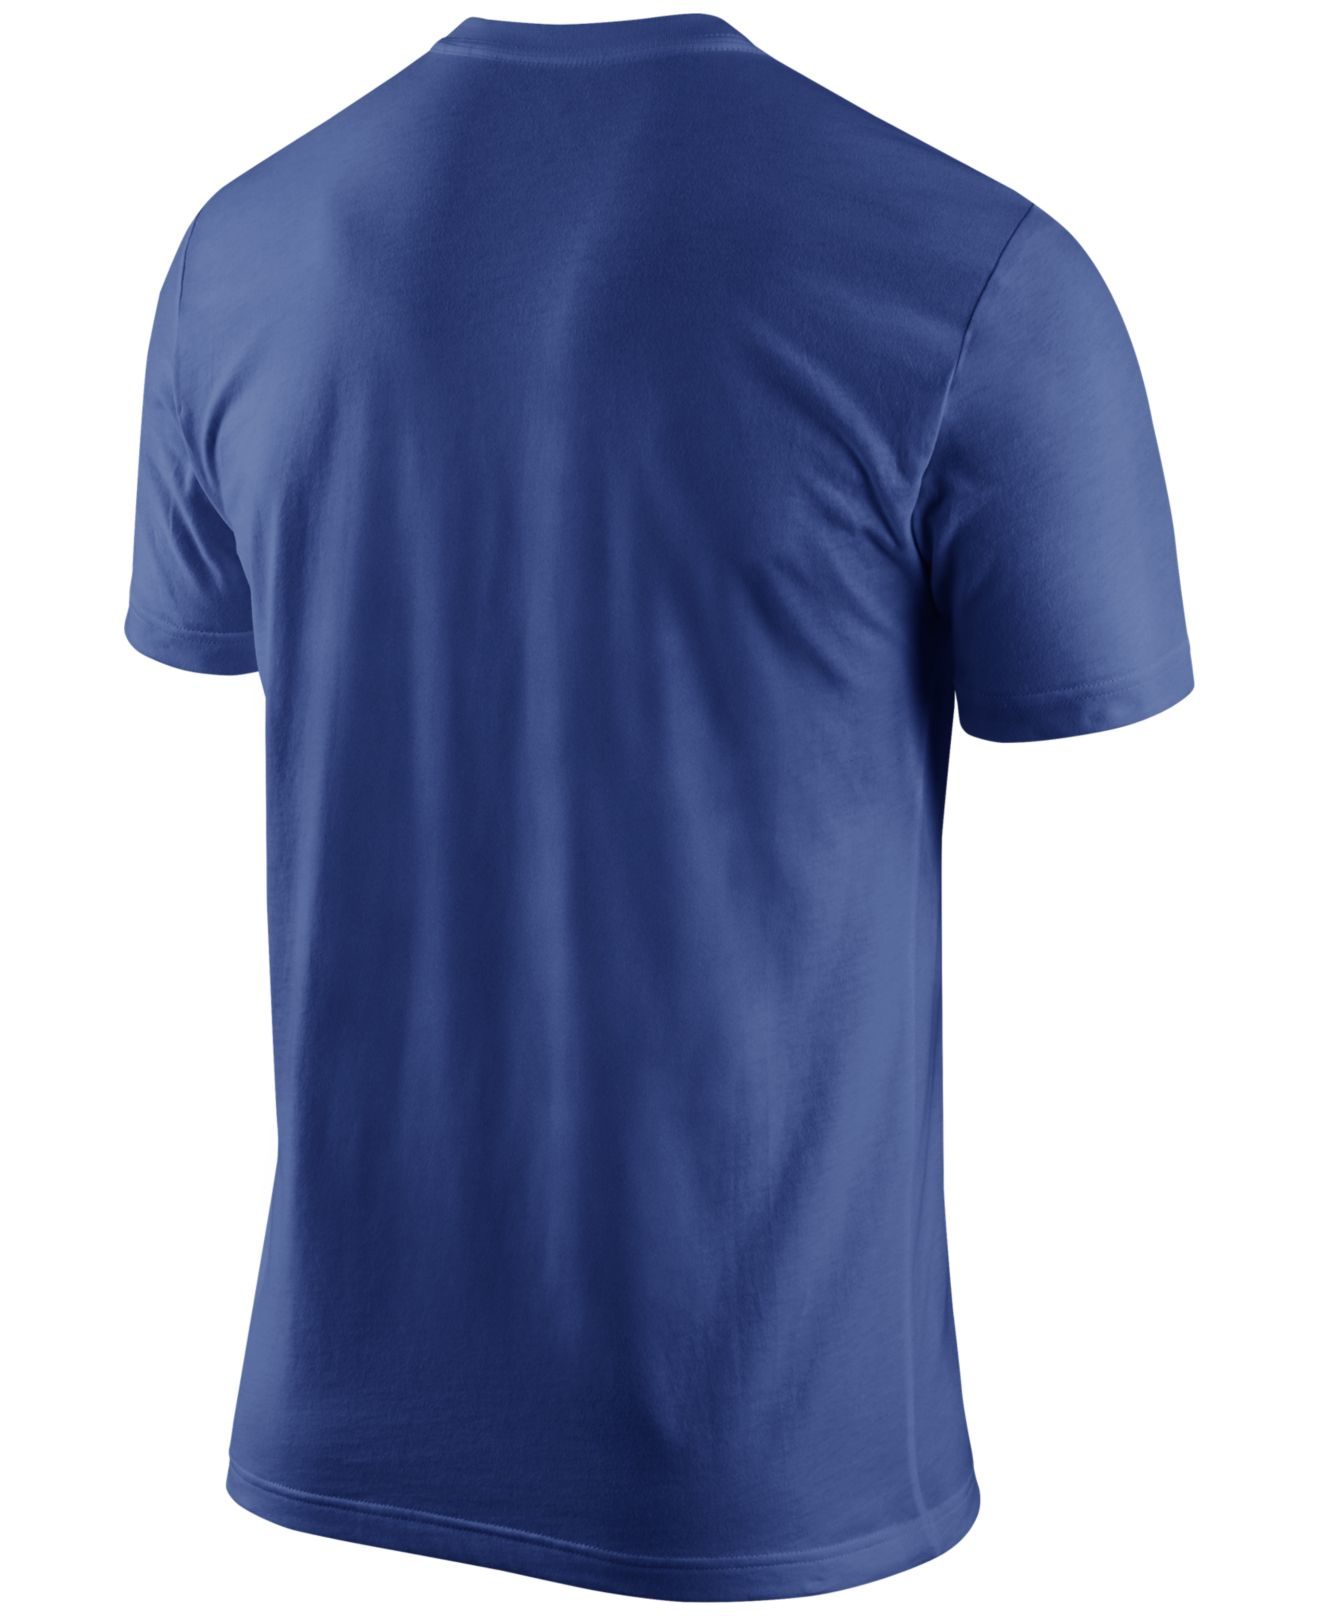 Lyst - Nike Men's New York Giants Team Stripe T-shirt in Blue for Men